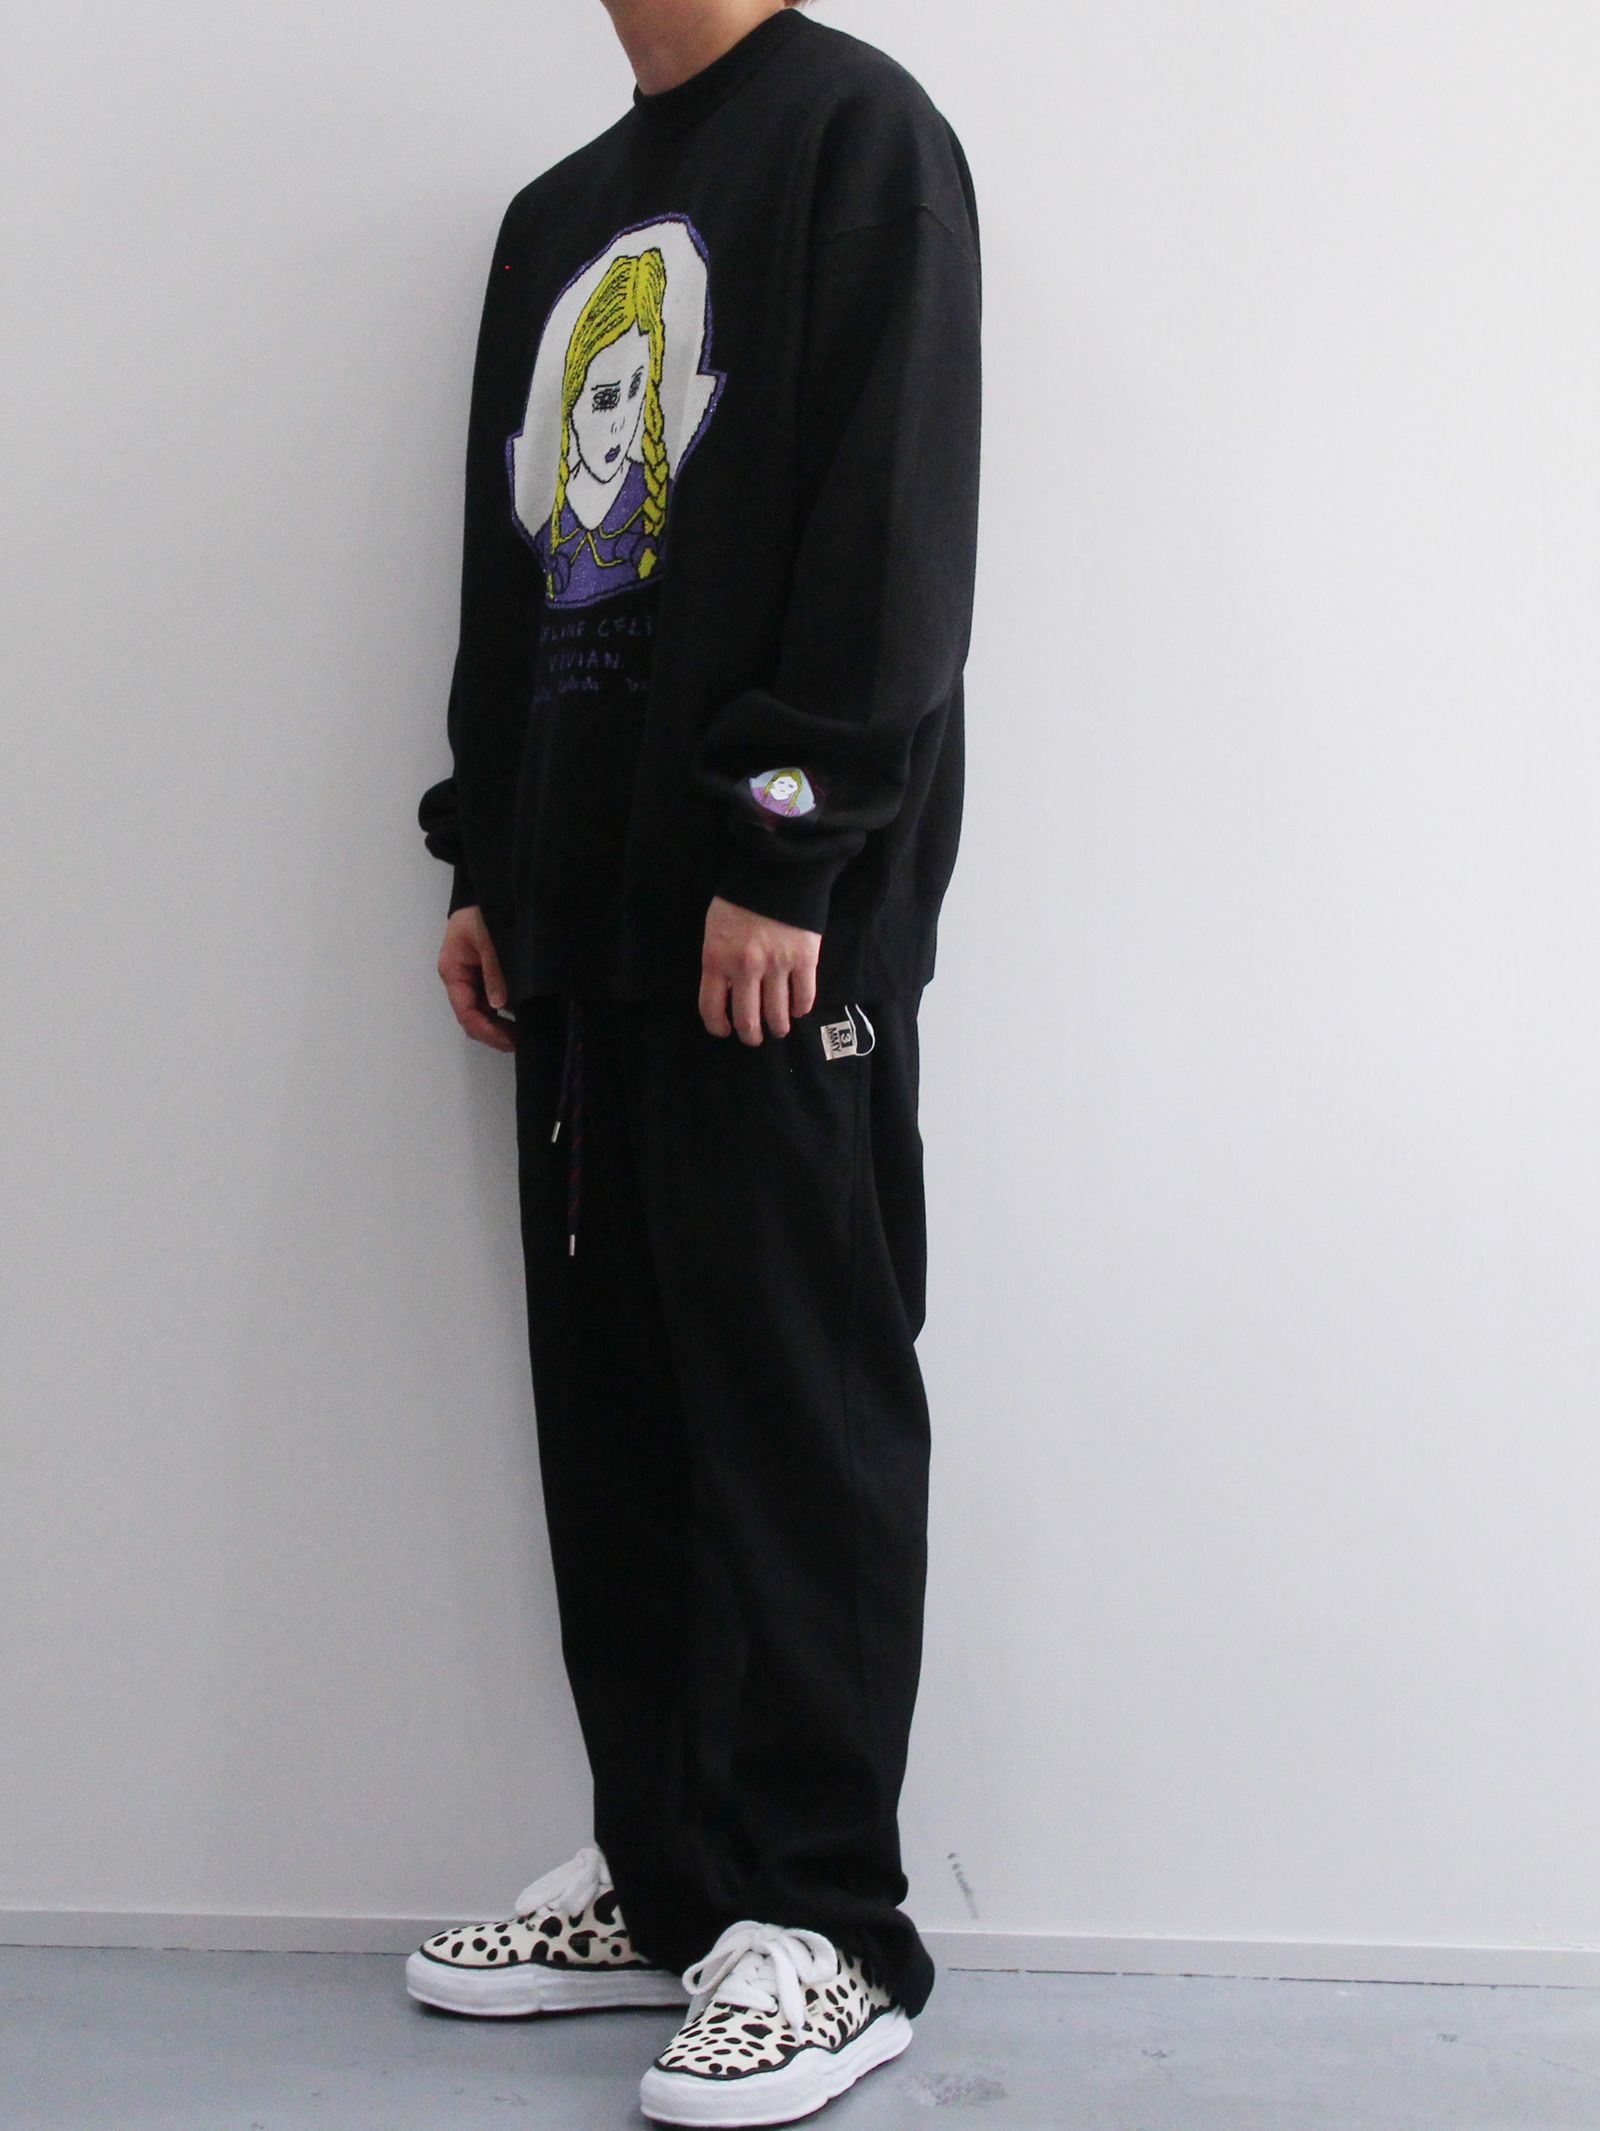 KIDILL - Pullover Knit Angeline Celistine ViVian KIDILL × Henry Darger  Collaboration BLACK | ADDICT WEB SHOP